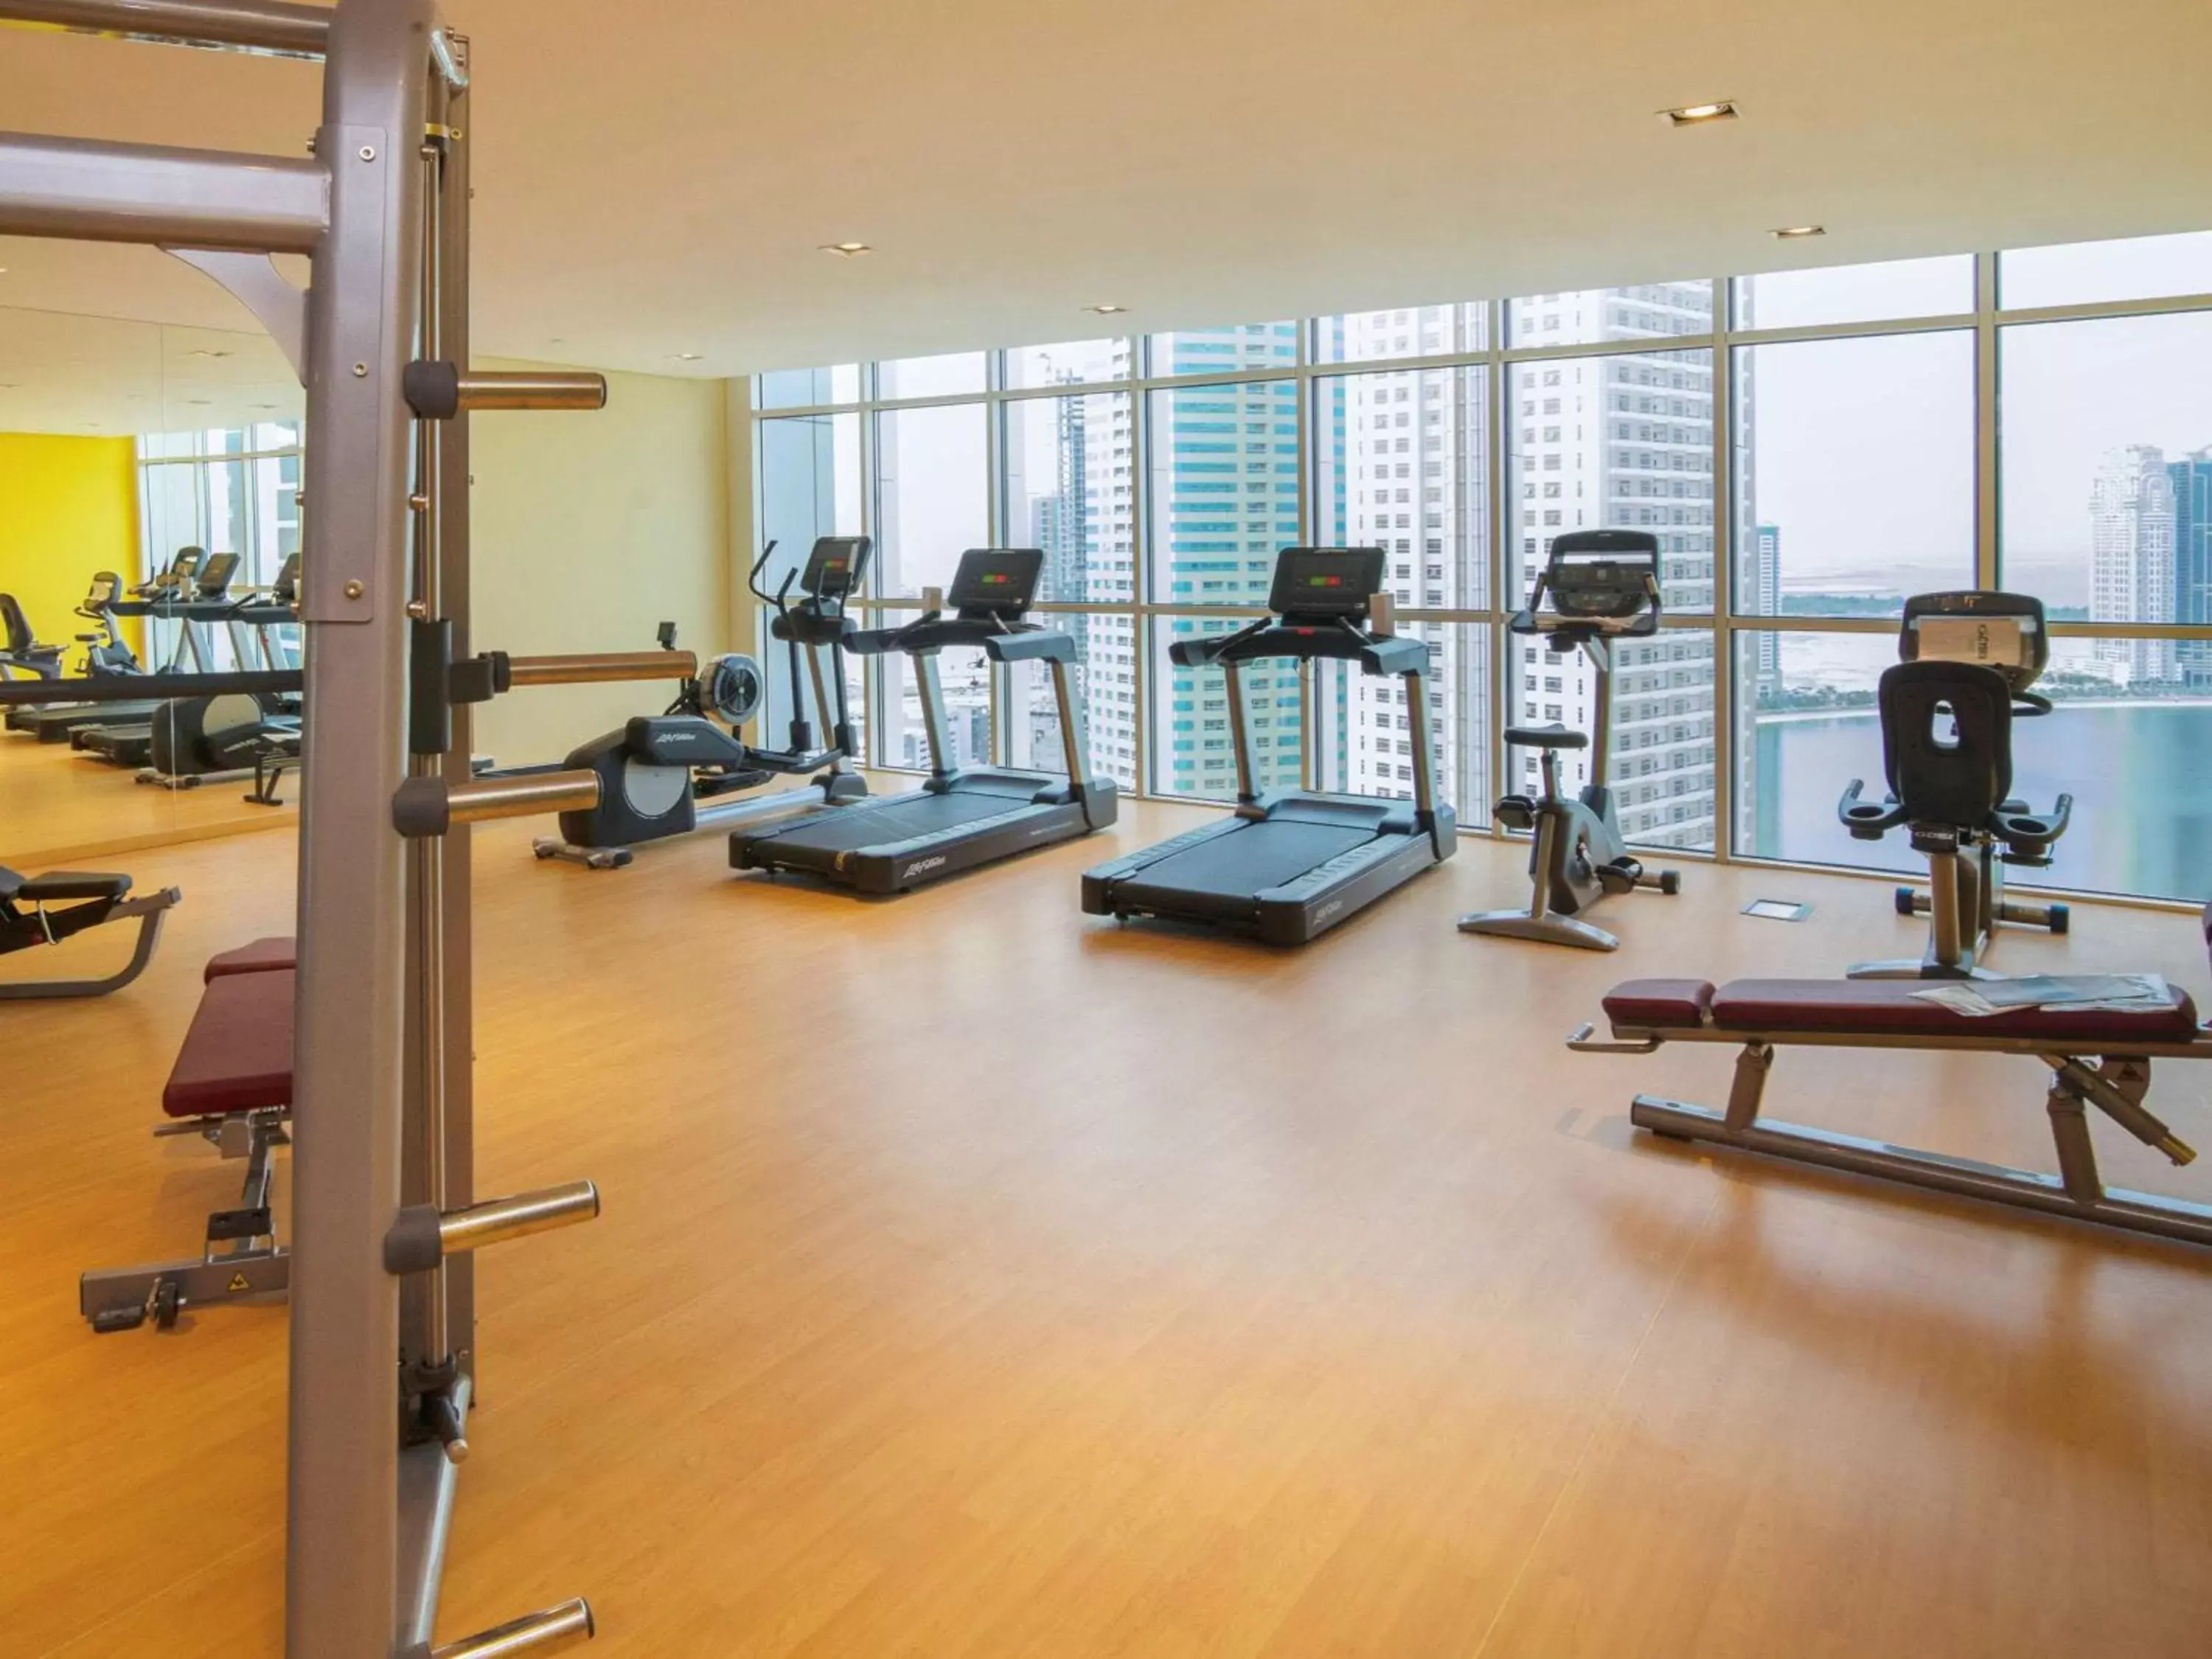 Fitness centre/facilities, Fitness Center/Facilities in Pullman Sharjah